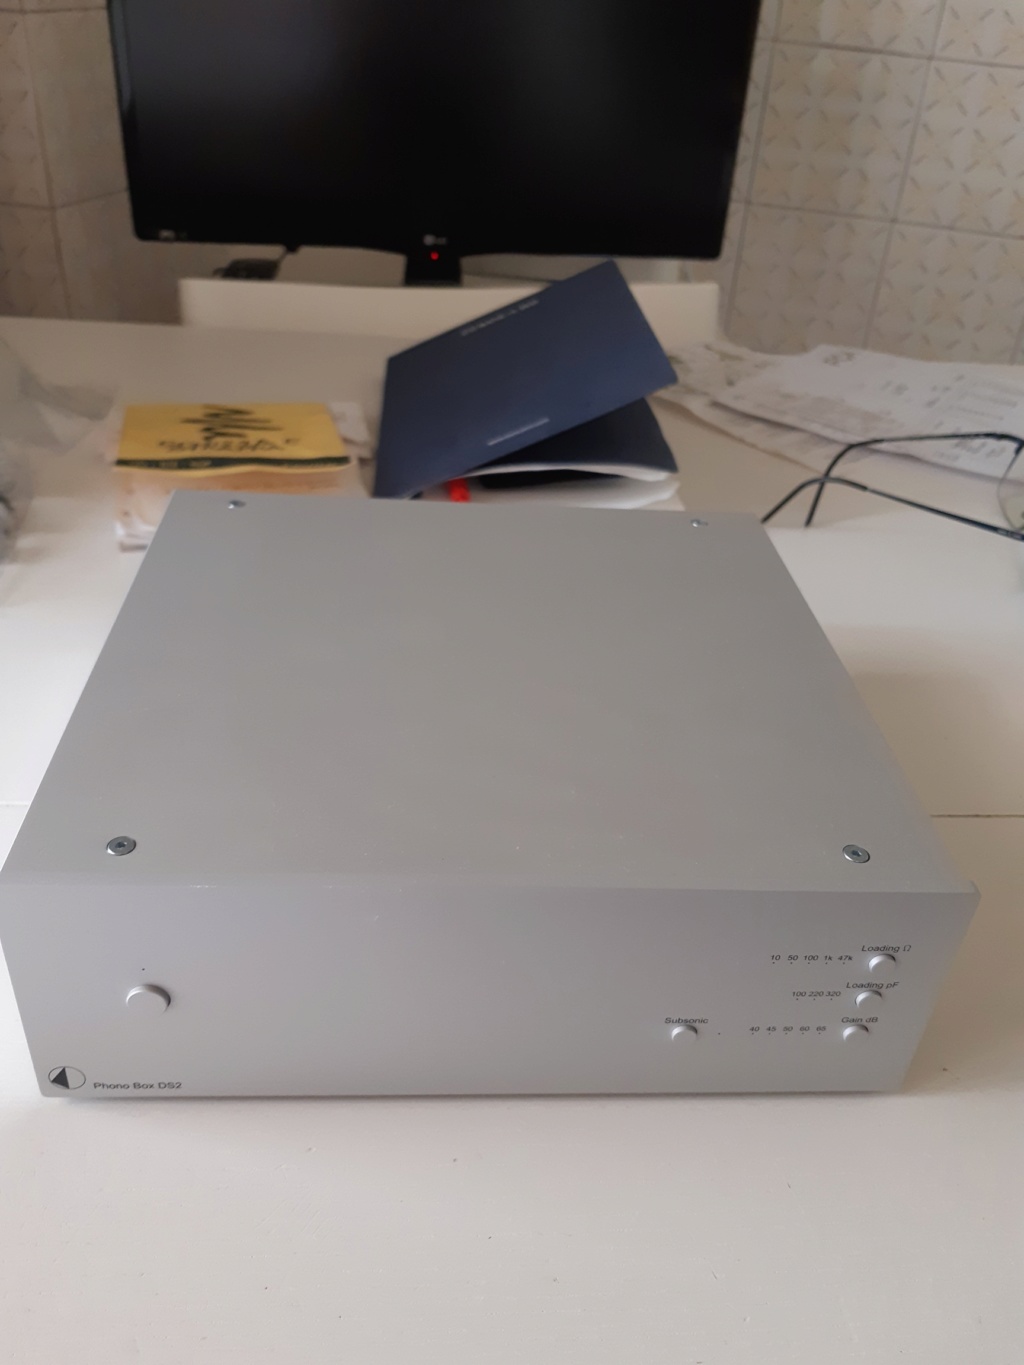 (TO) Pro-ject Phono Box DS2 per testine MM e MC.  -VENDUTO- 20190710